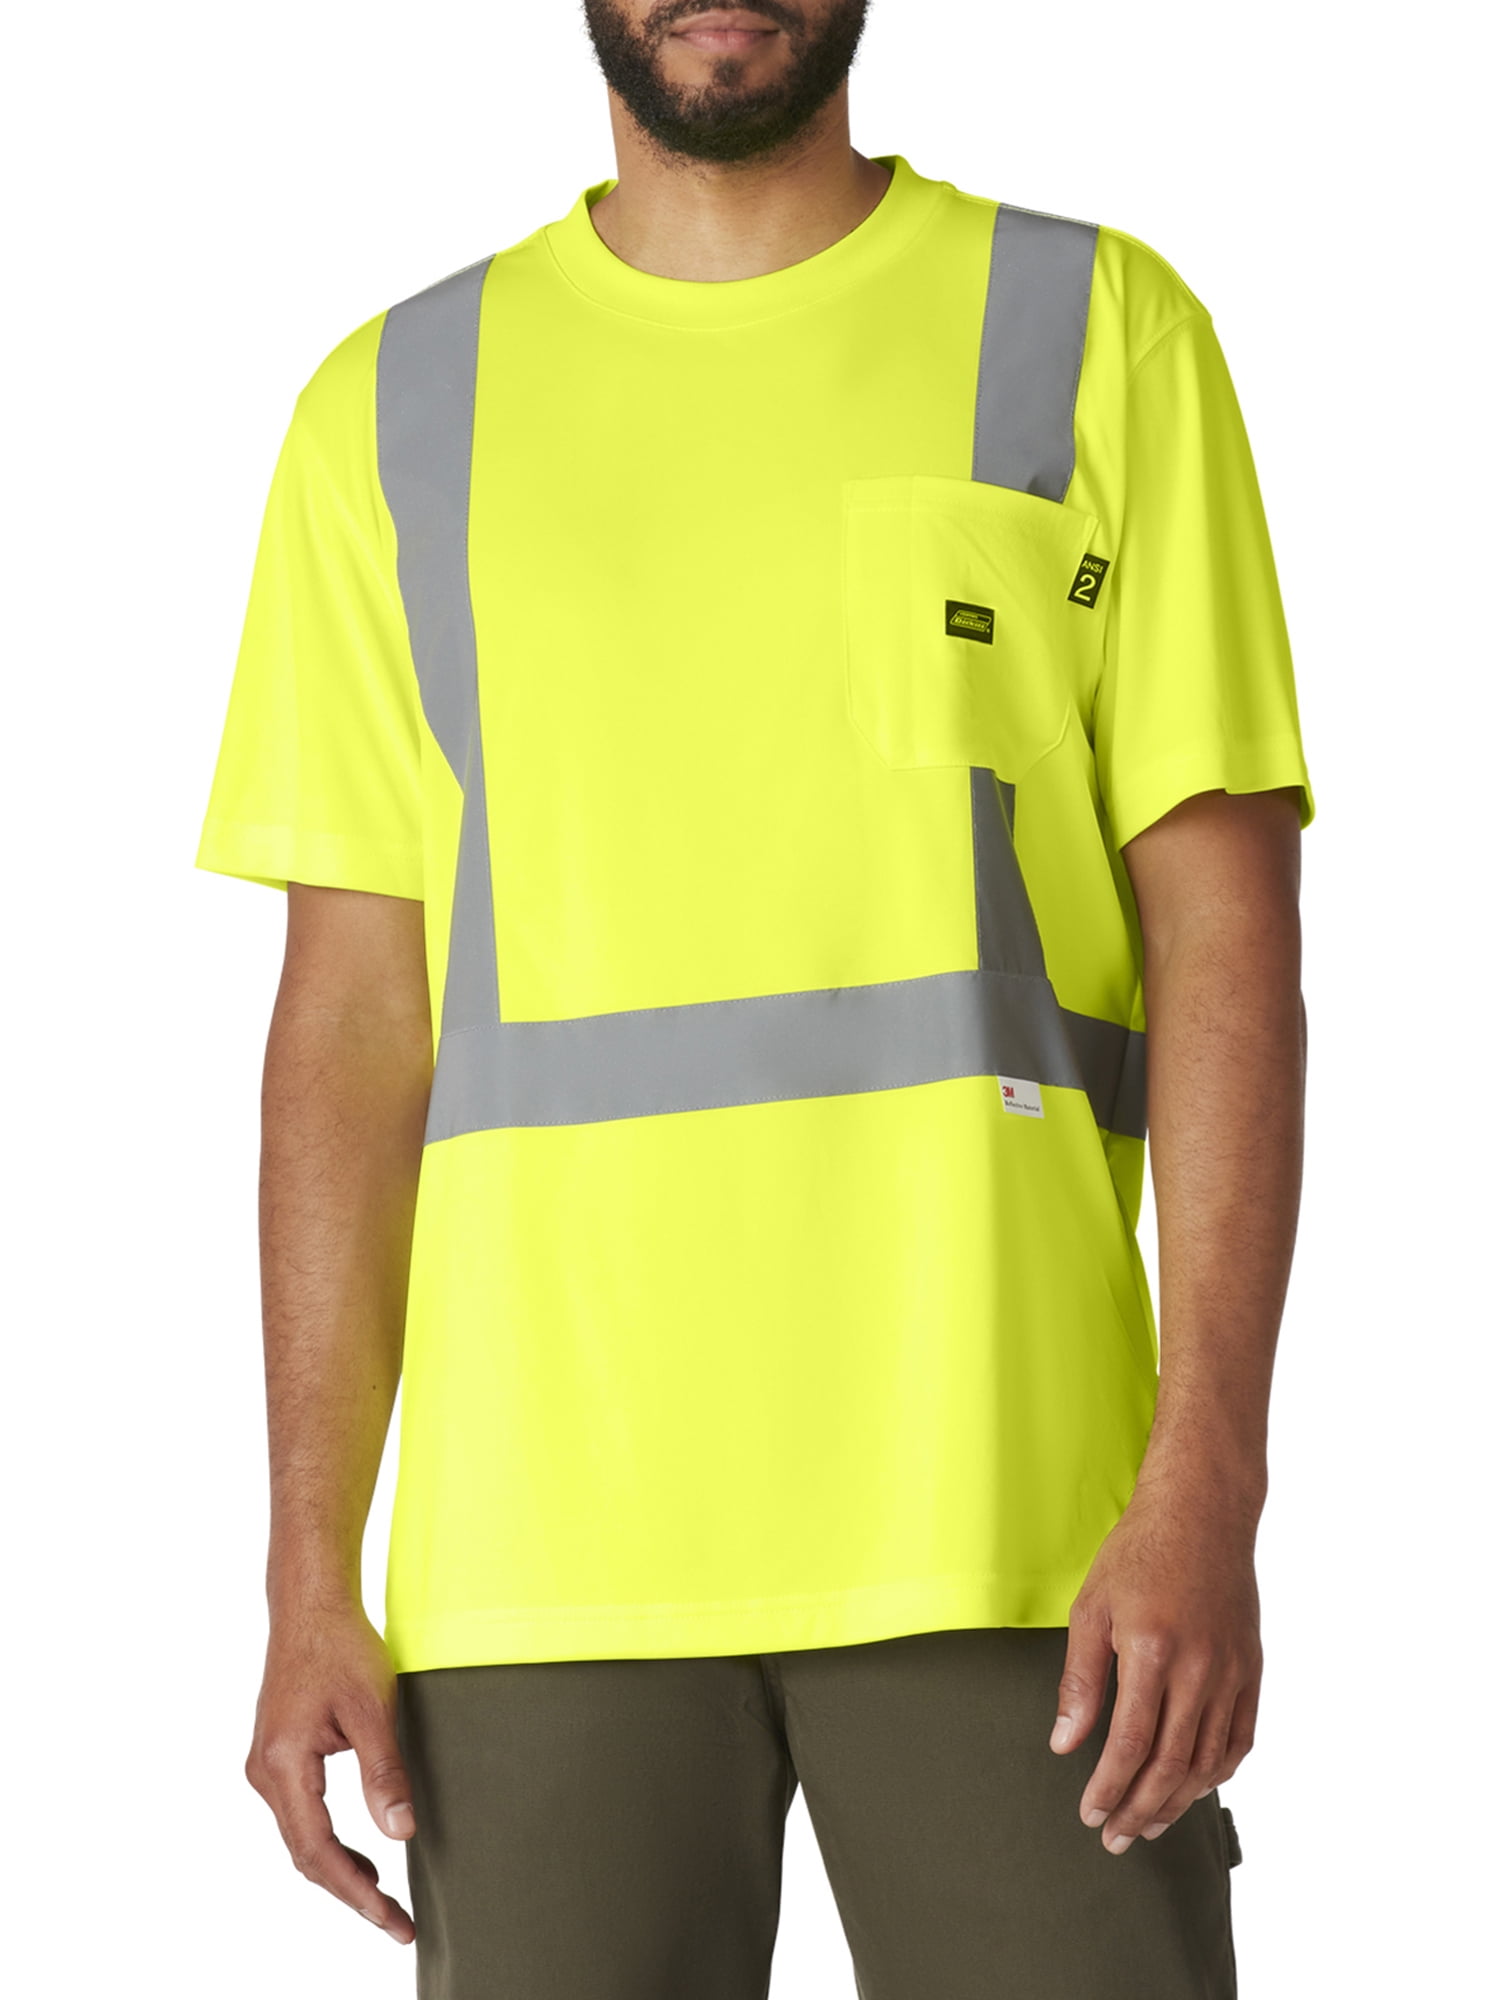 Mens Hi Vis T Shirt Short Sleeve Safety High Visibility Reflective Shirts Yellow 